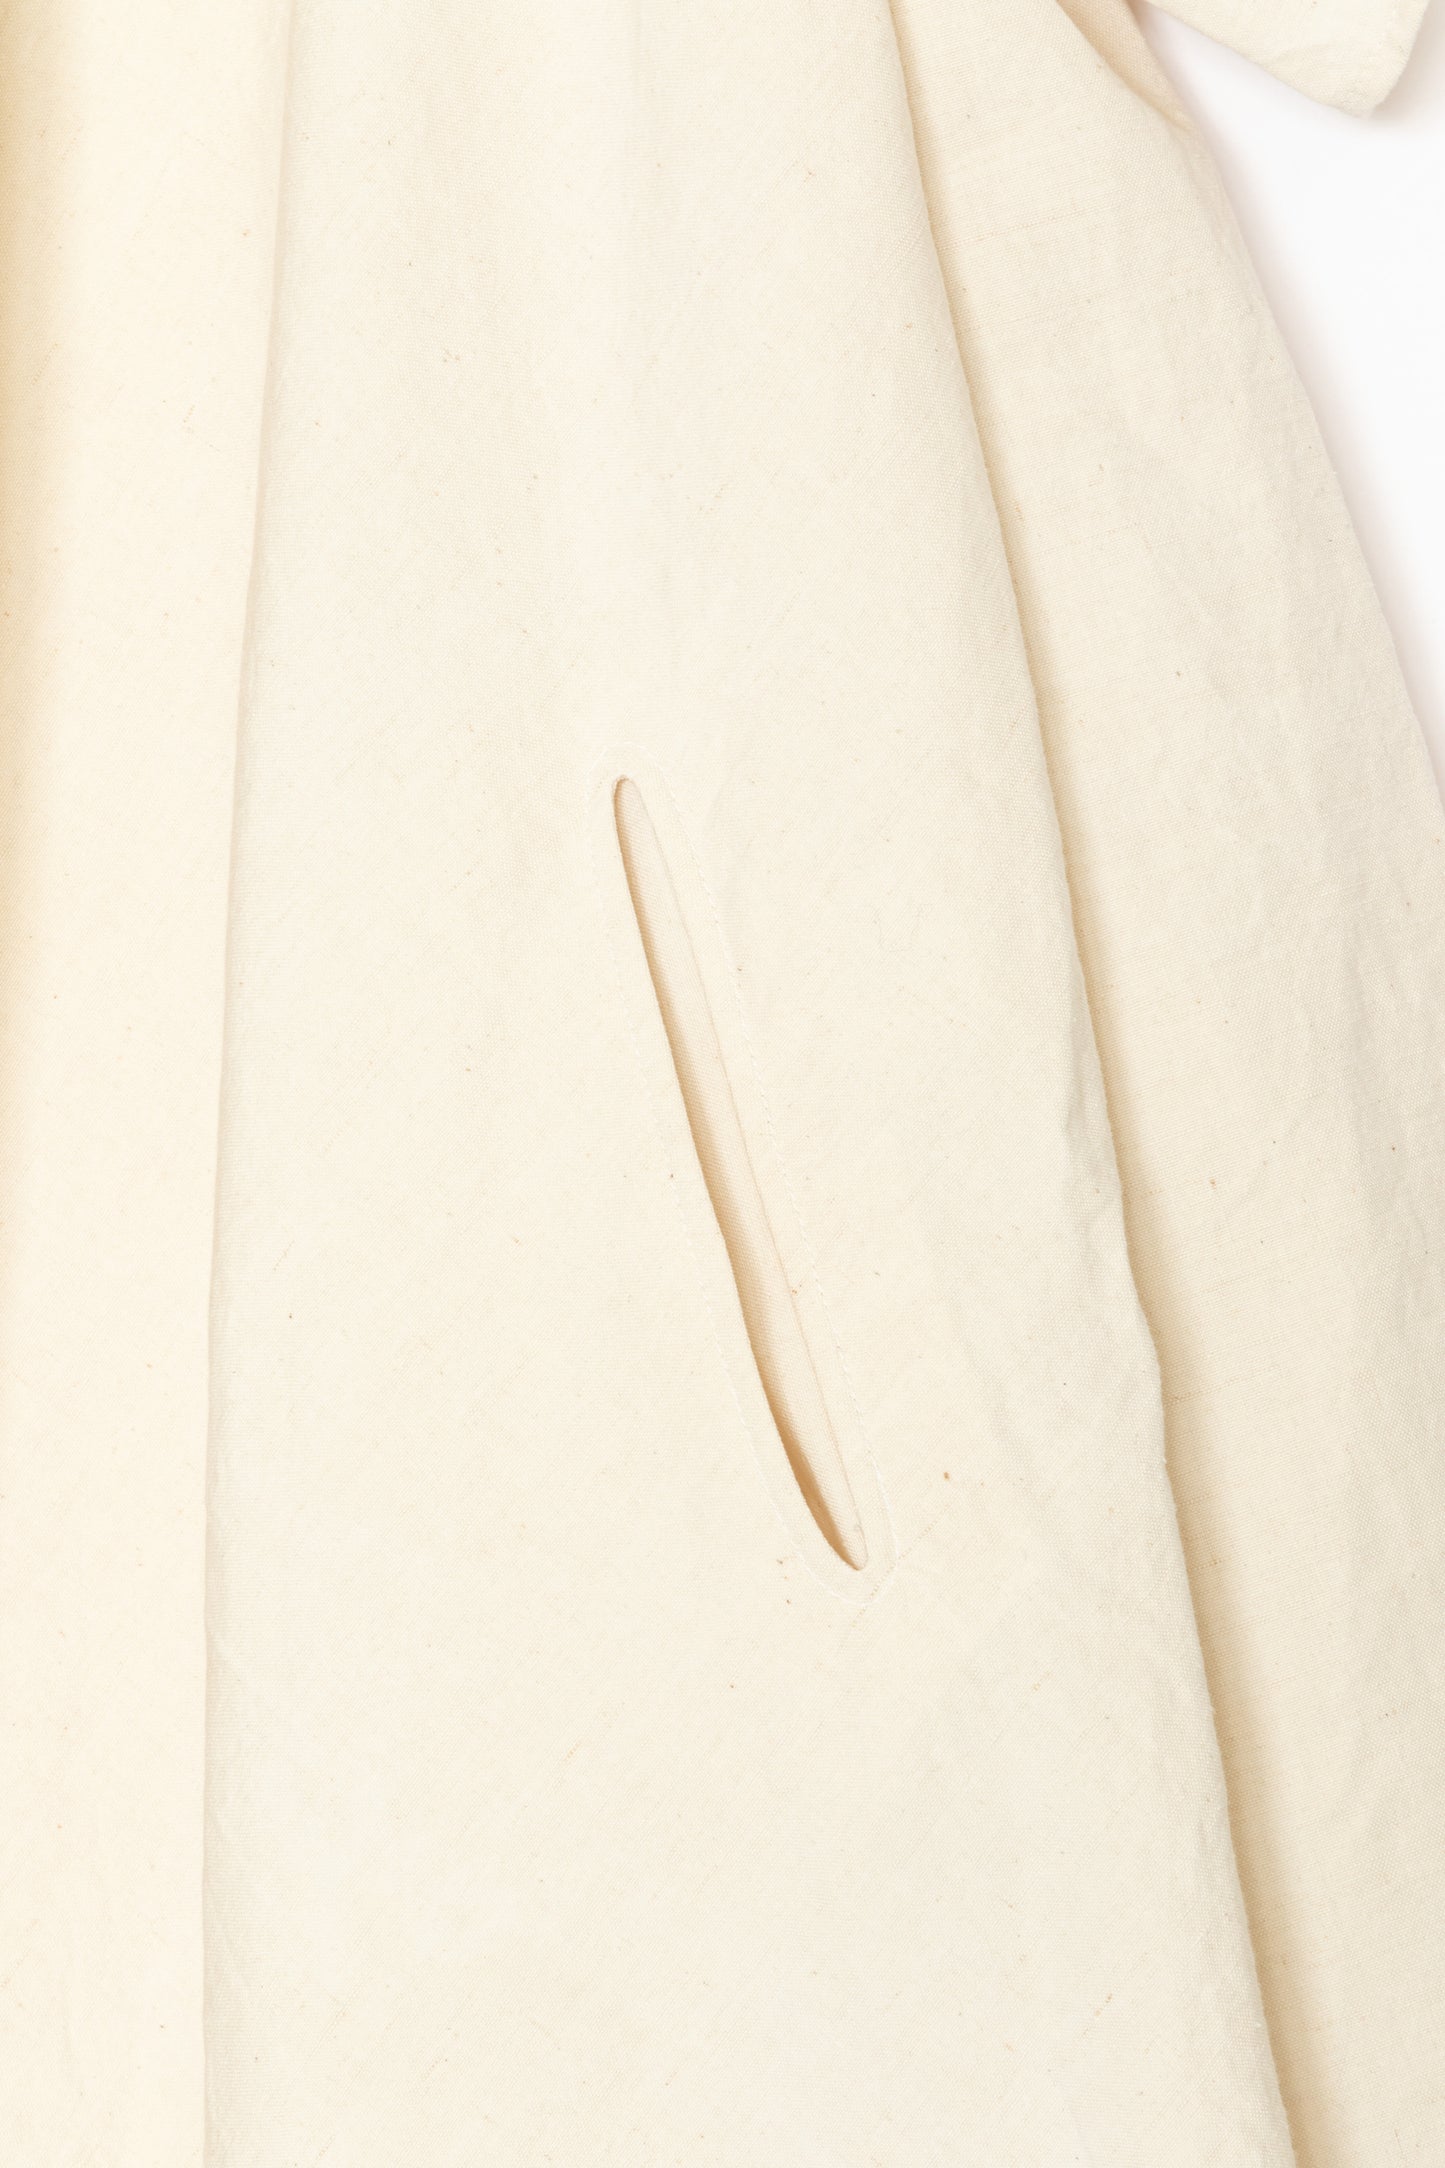 [Whiteread] Dress 15 - Salt Linen